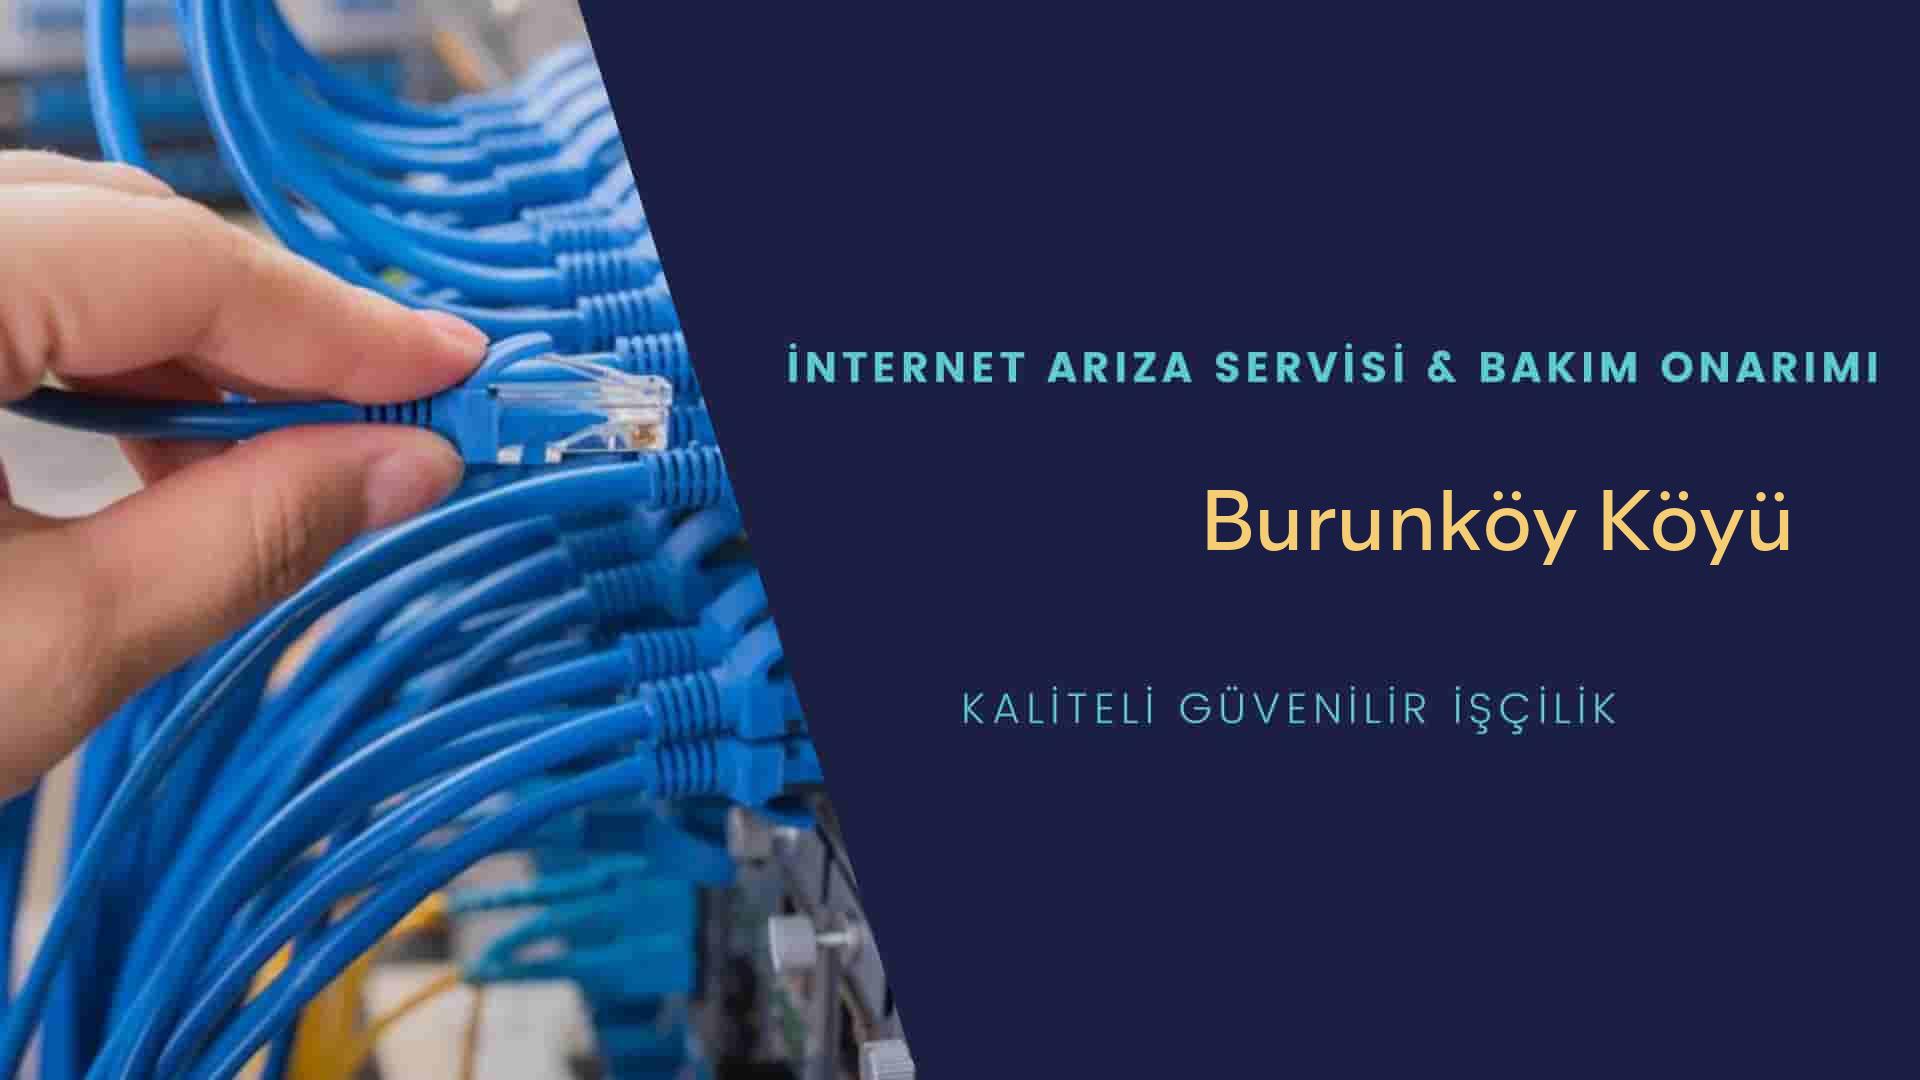 Burunköy Köyü internet kablosu çekimi yapan yerler veya elektrikçiler mi? arıyorsunuz doğru yerdesiniz o zaman sizlere 7/24 yardımcı olacak profesyonel ustalarımız bir telefon kadar yakındır size.